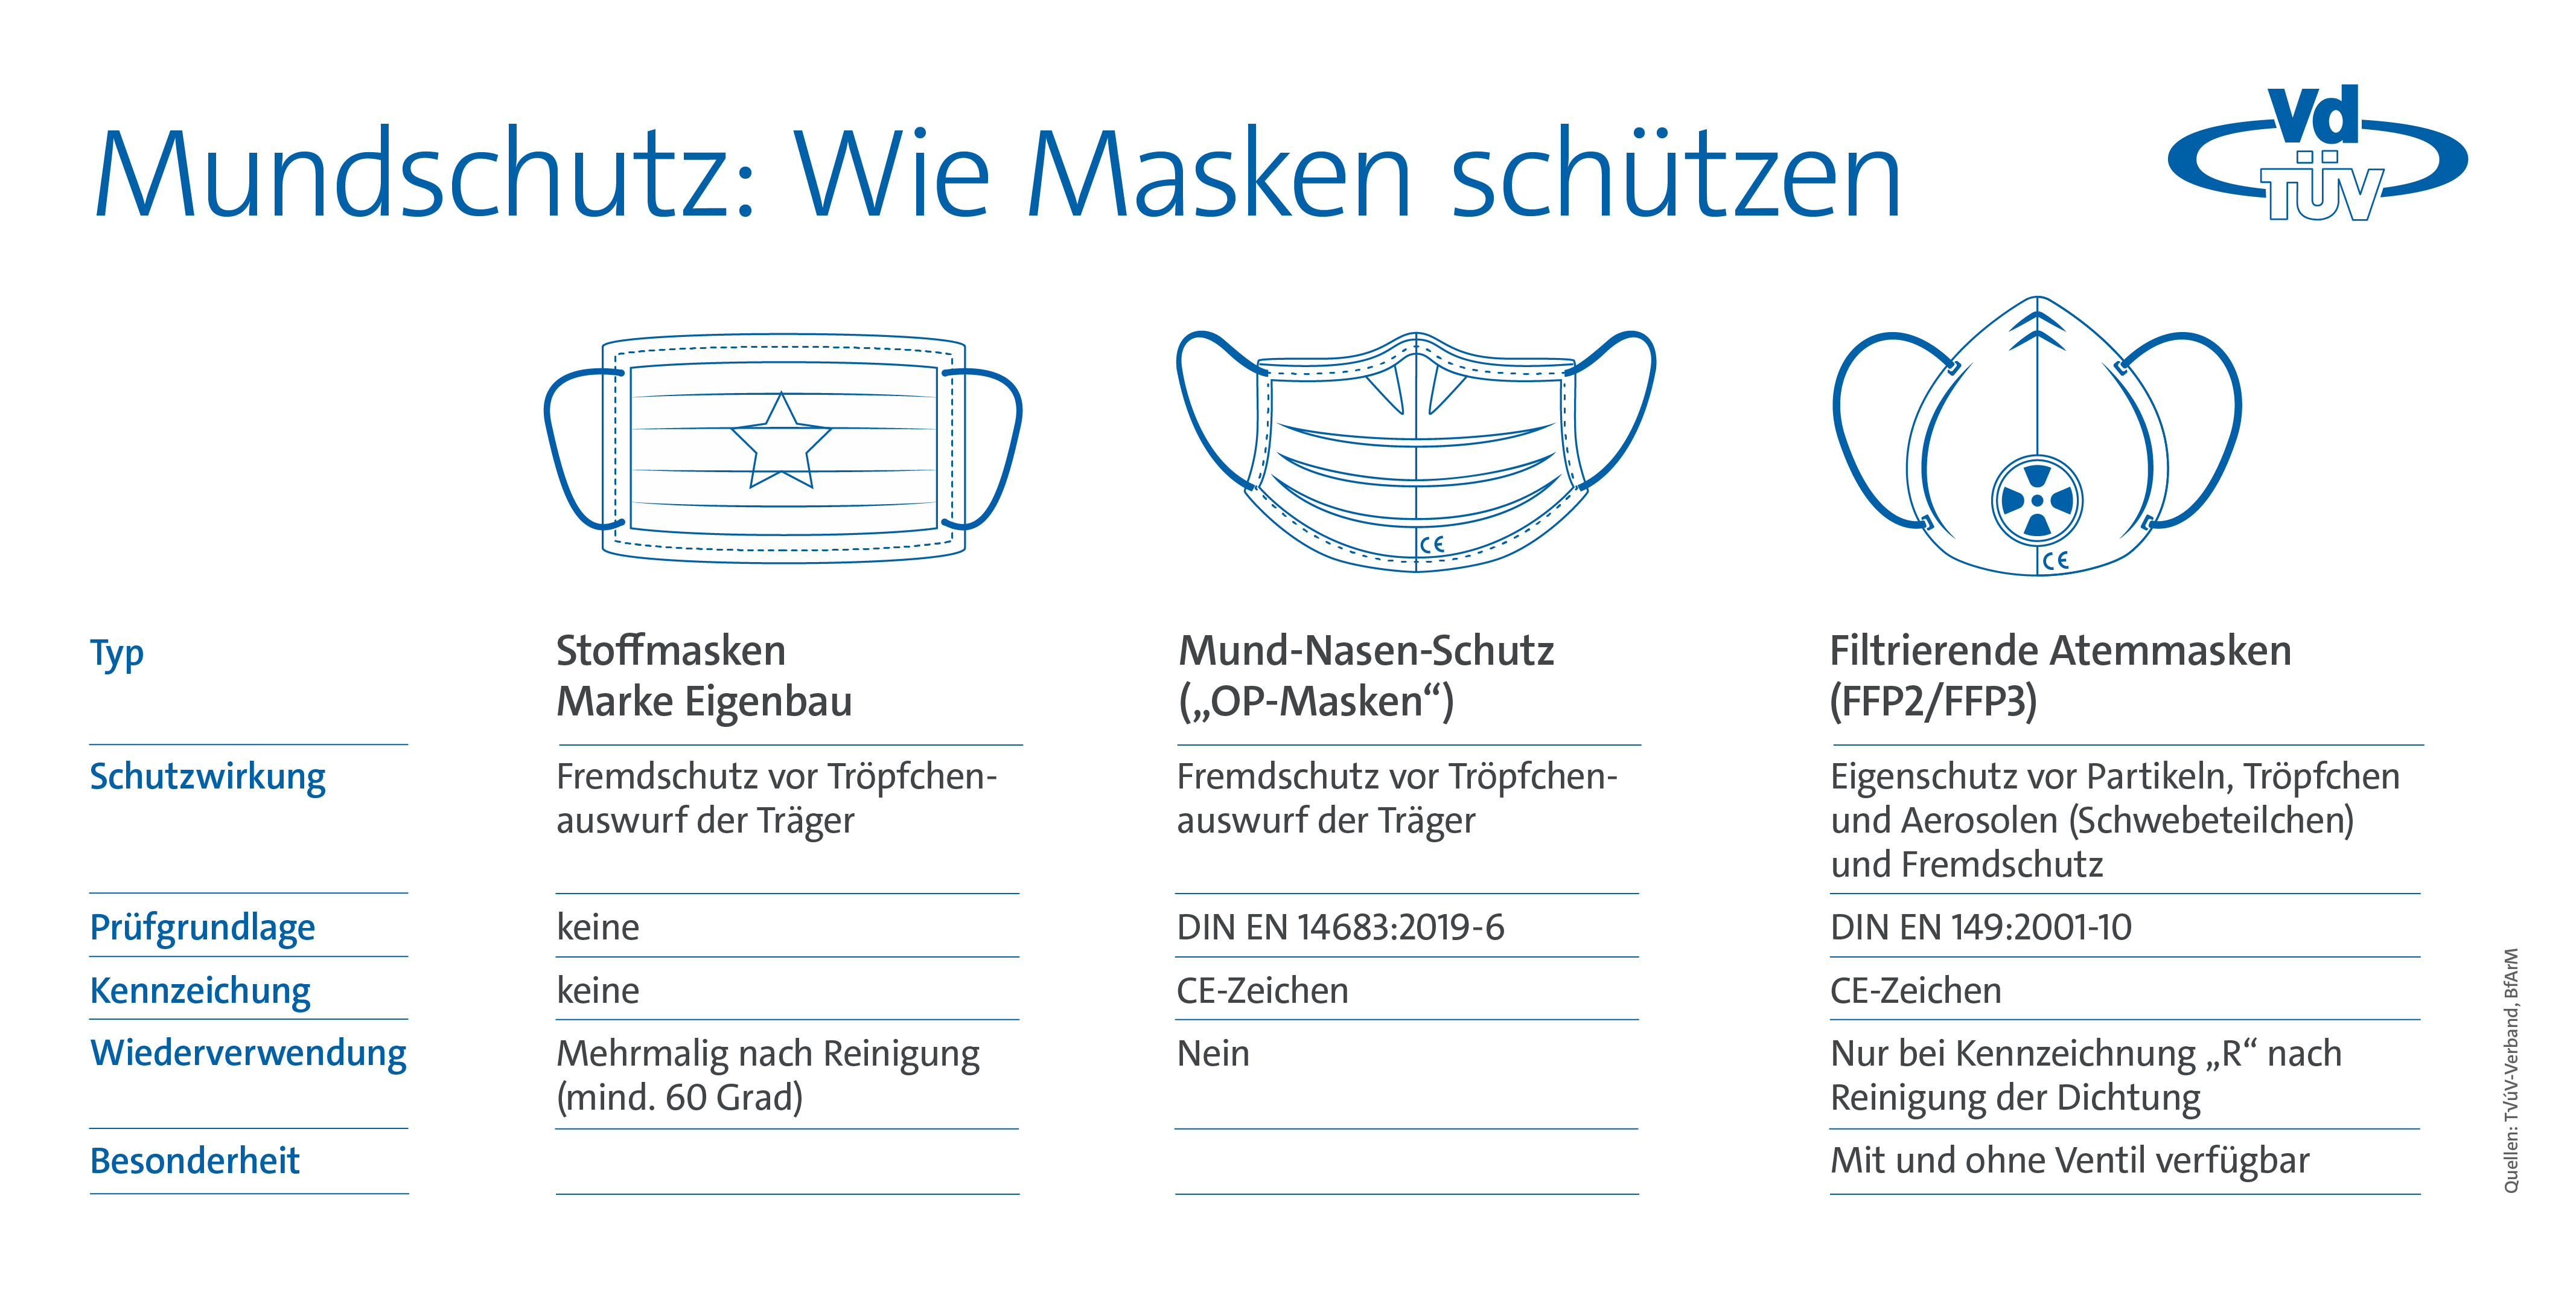 Grafik zur Unterscheidung der Maskenarten (© TÜV-Verband)